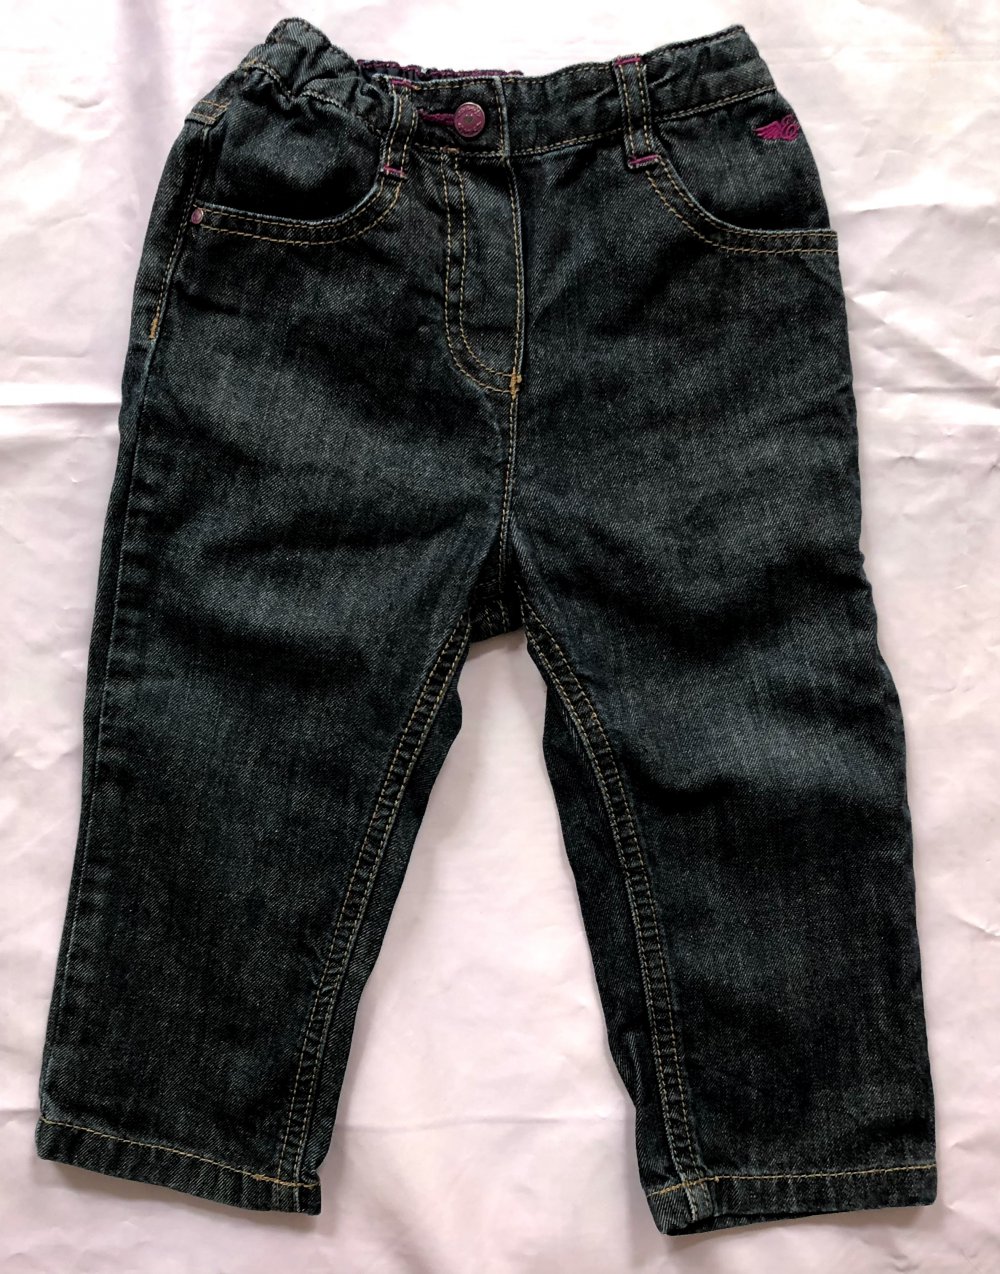 Neue und nie getragene Schwarze Jeans von marke ESPRIT. Gr 74